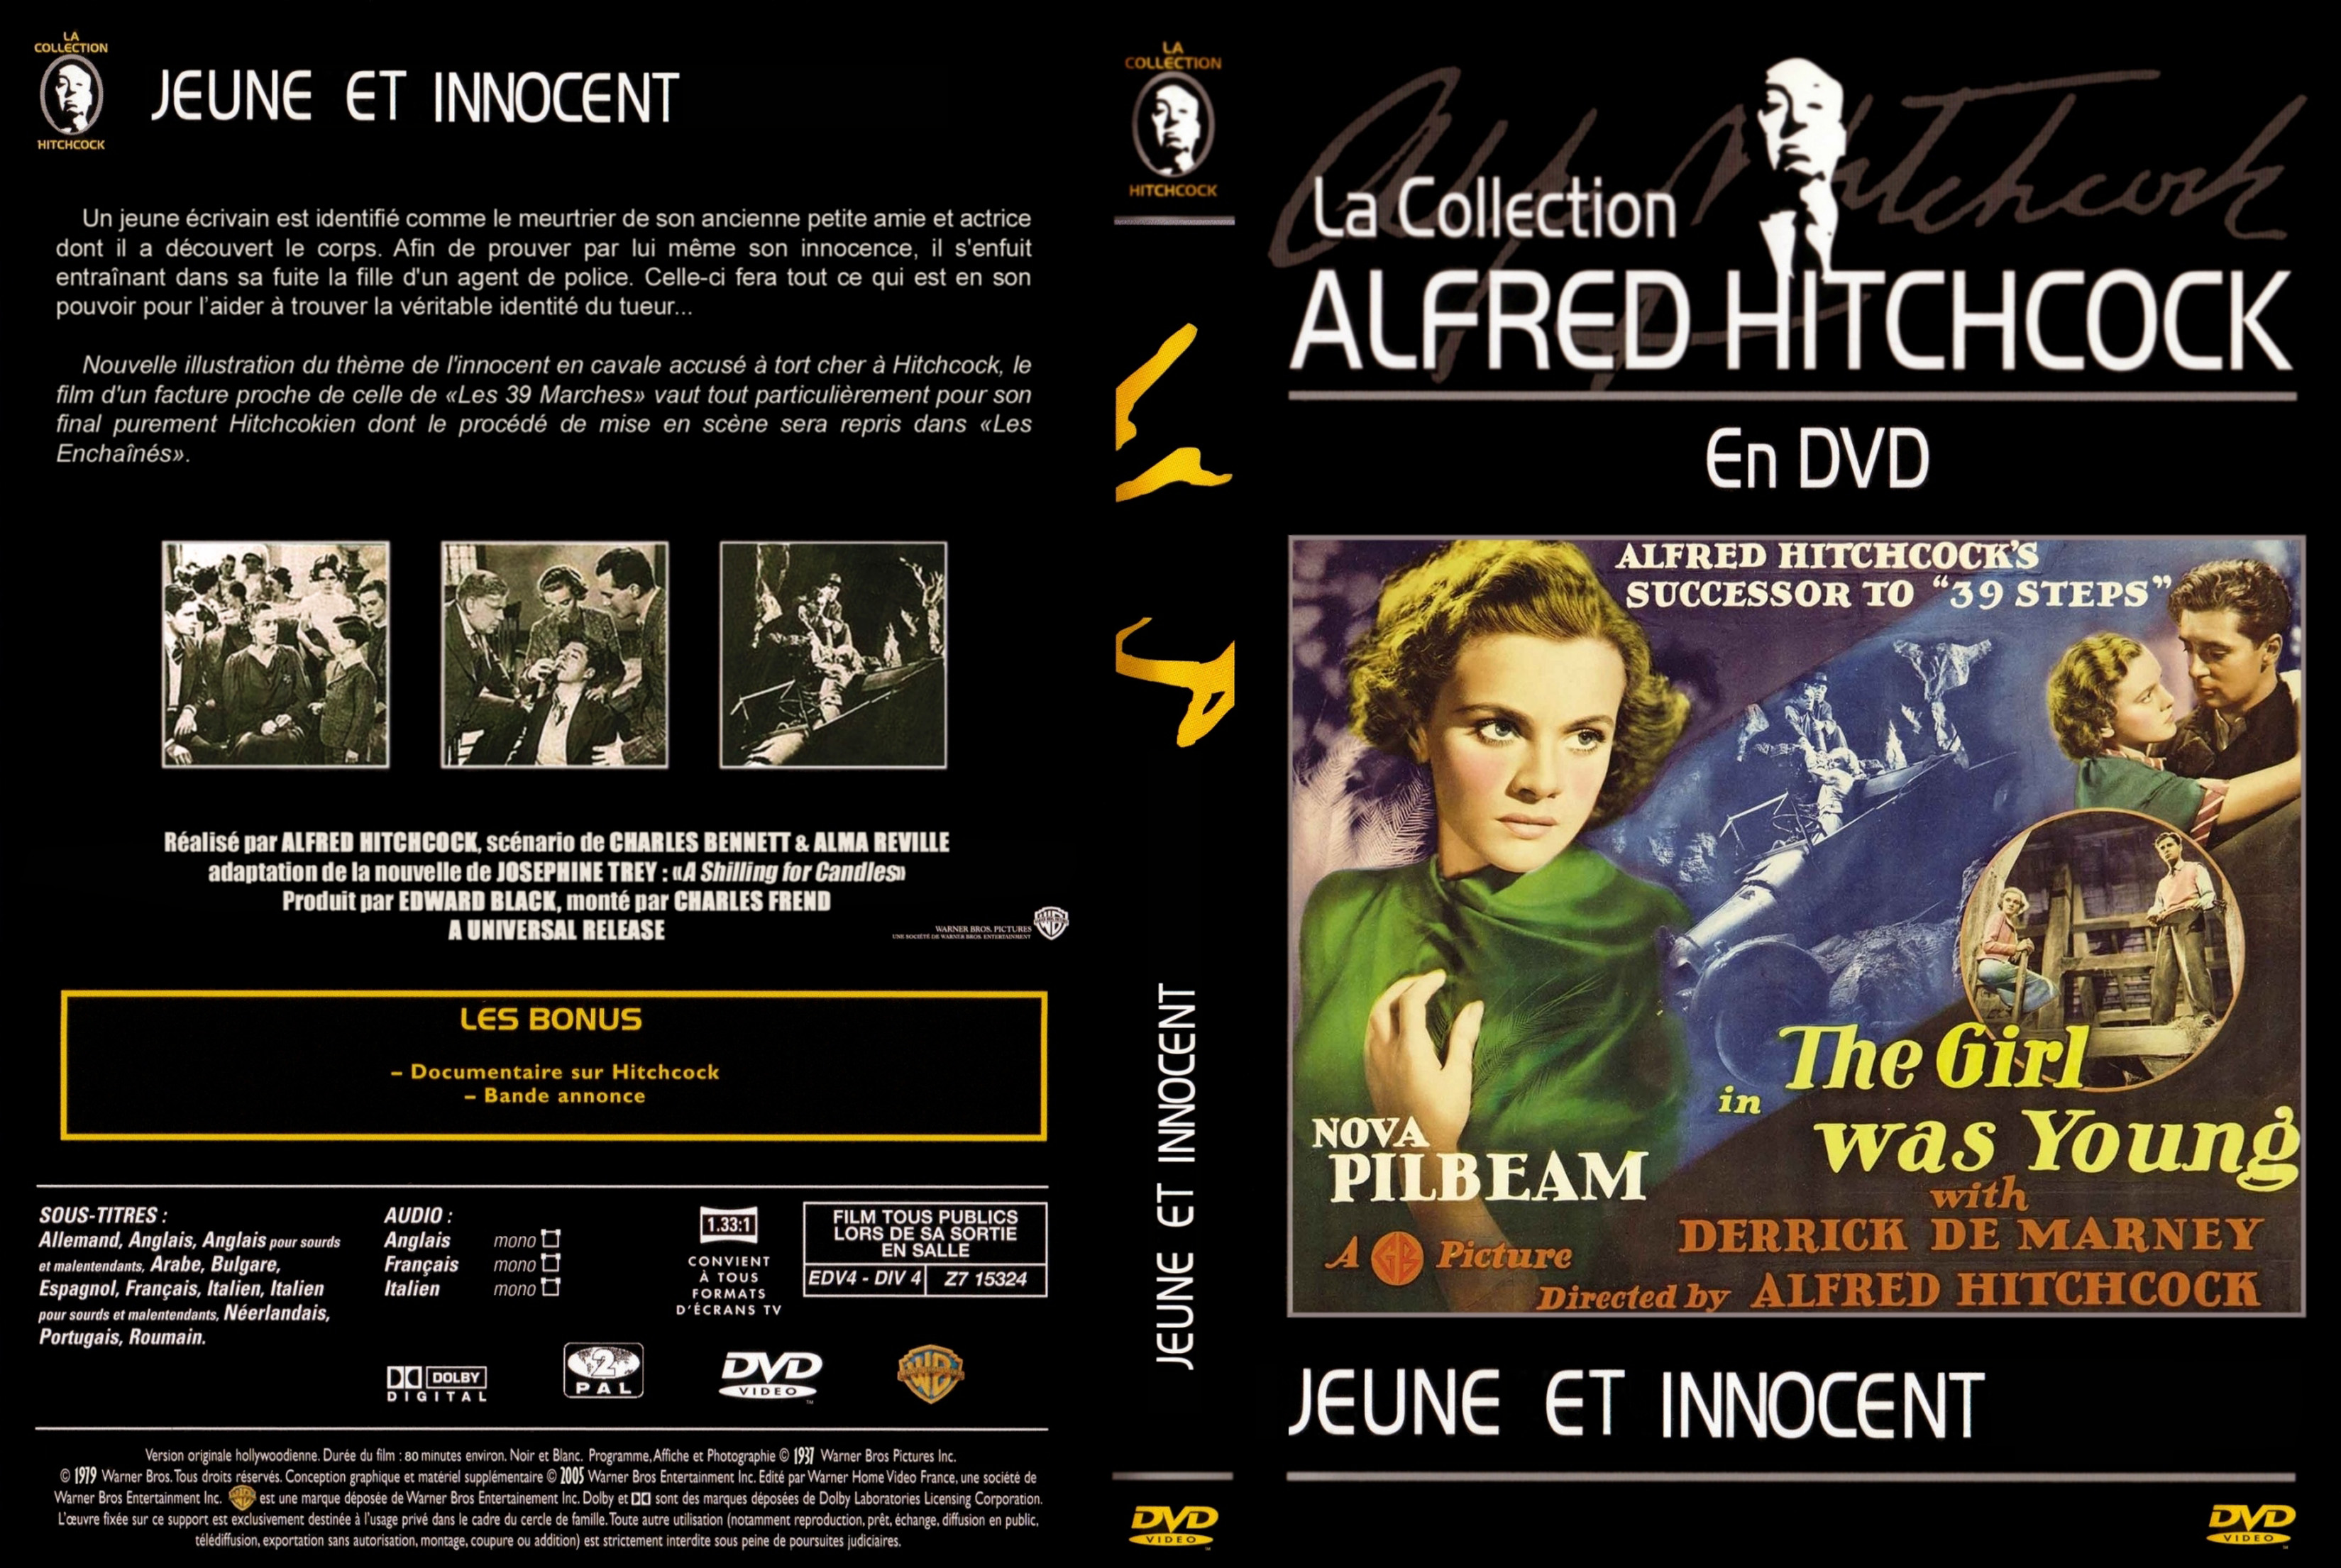 Jaquette DVD Jeune et innocent